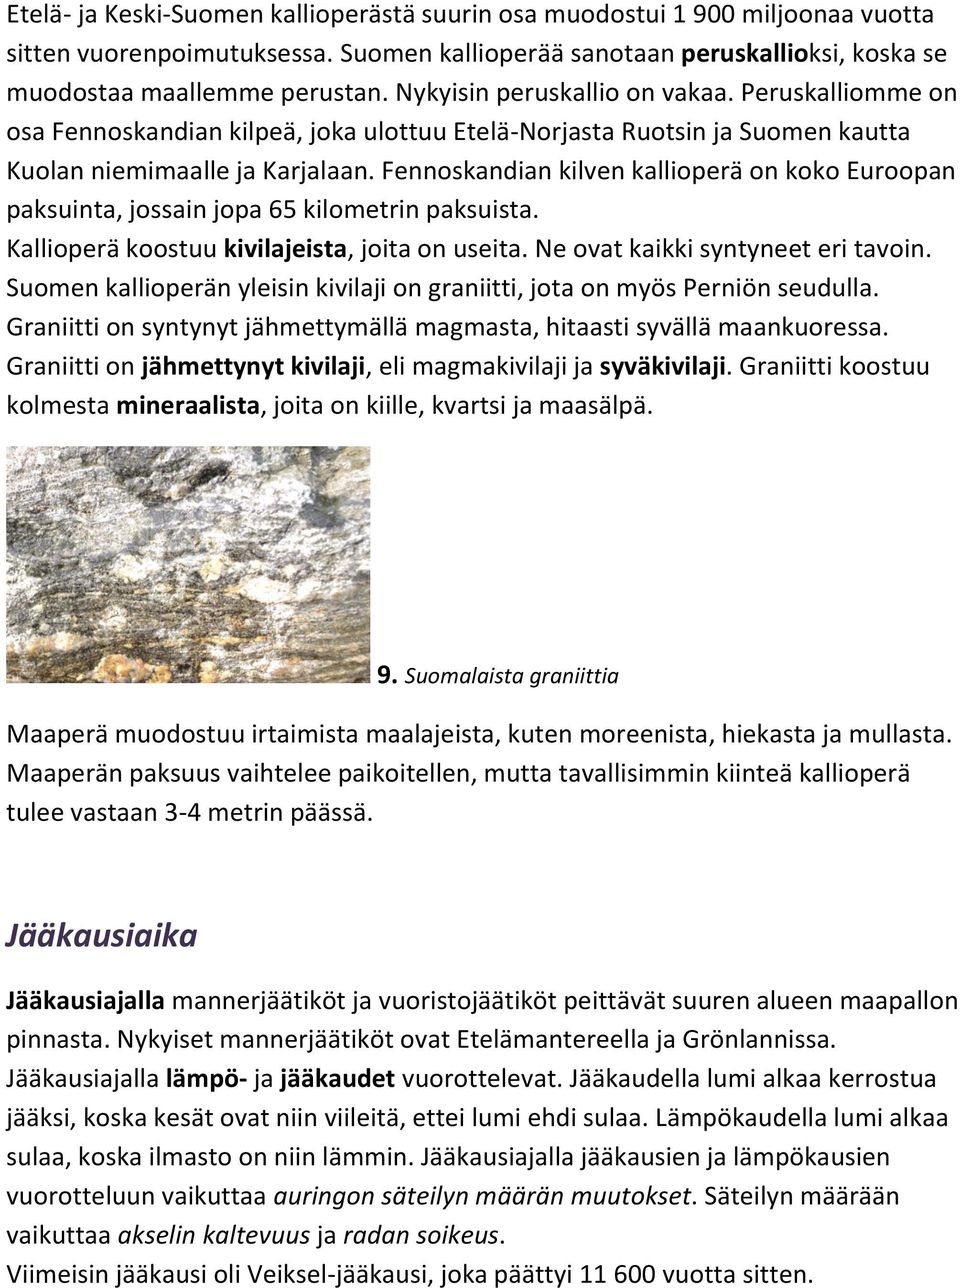 Fennoskandian kilven kallioperä on koko Euroopan paksuinta, jossain jopa 65 kilometrin paksuista. Kallioperä koostuu kivilajeista, joita on useita. Ne ovat kaikki syntyneet eri tavoin.